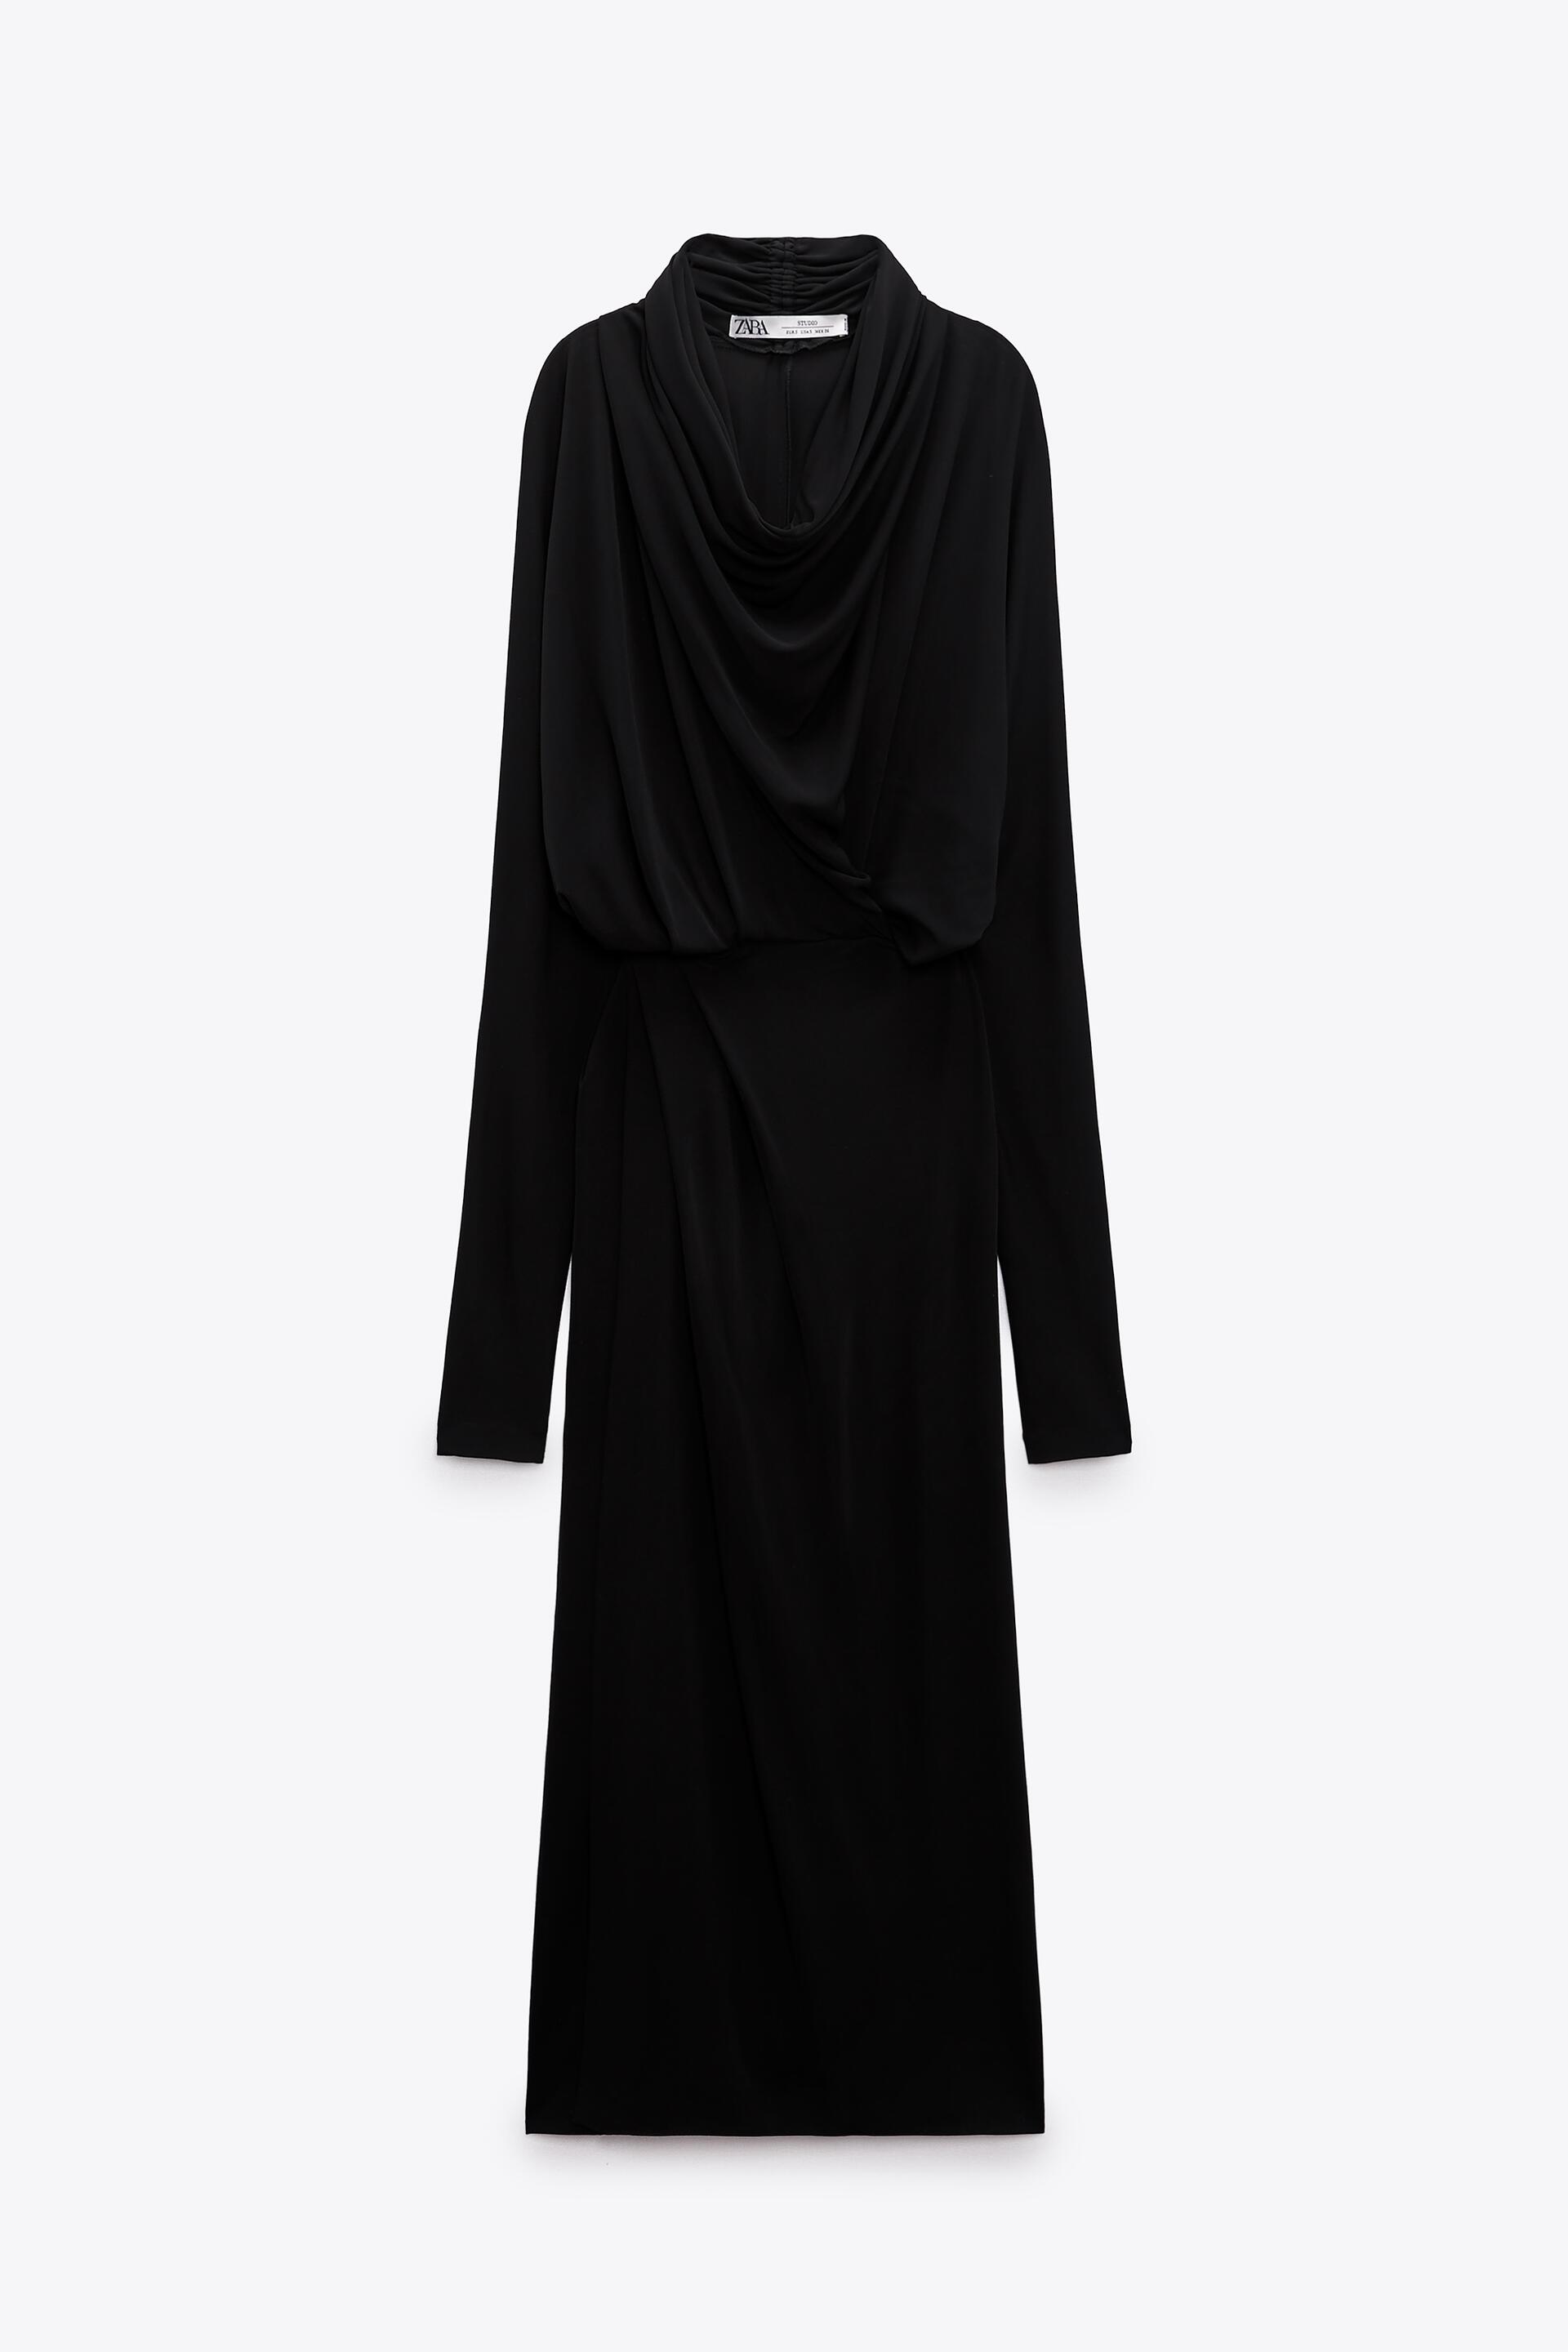 Платье женское ZARA 02089001 черное S (доставка из-за рубежа)